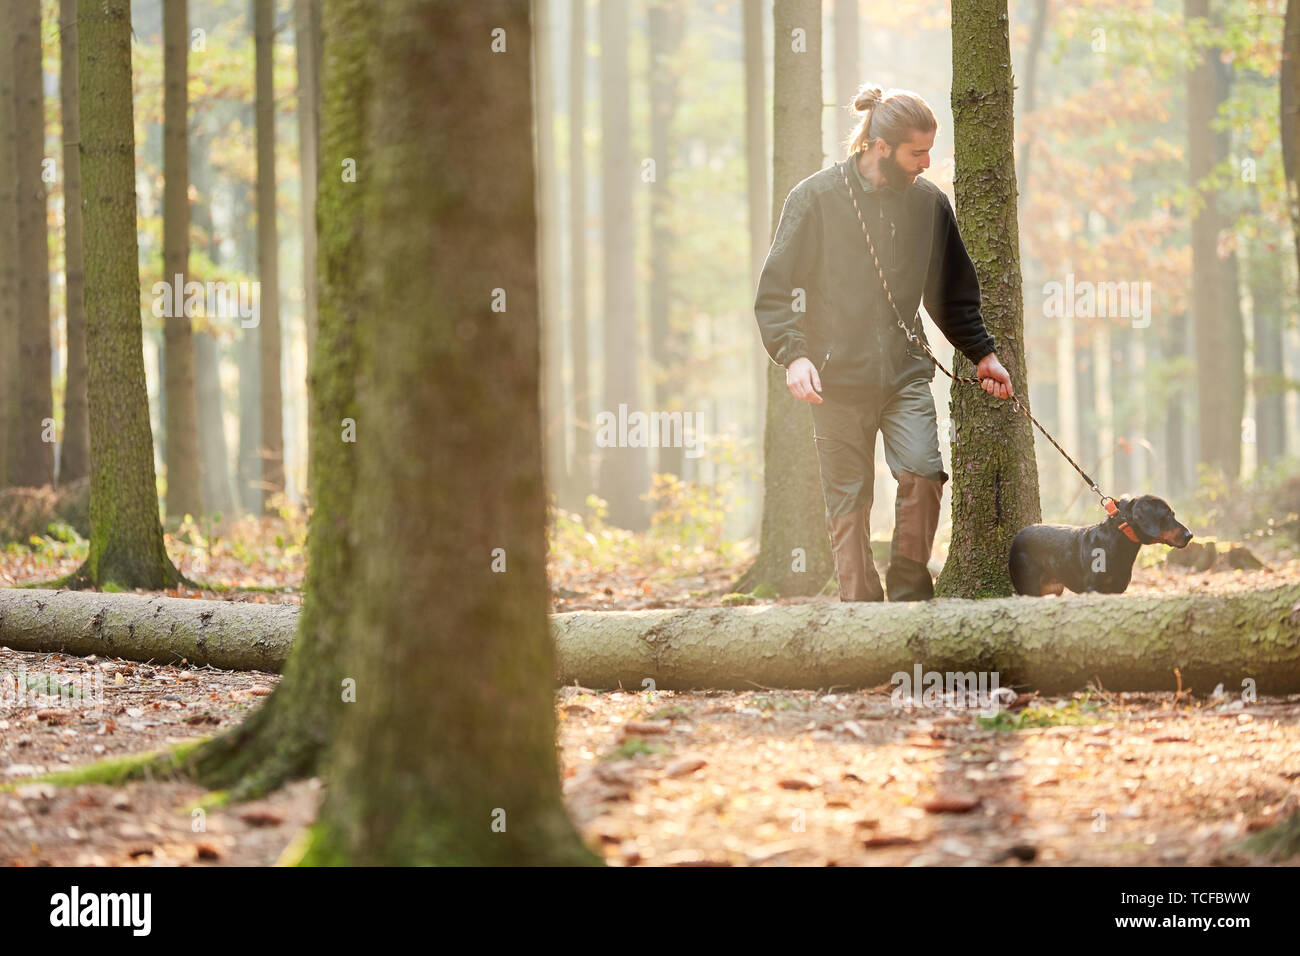 Ingénieur forestier ou du chasseur dans la forêt avec un chien comme un chien de chasse lors d'une promenade Banque D'Images